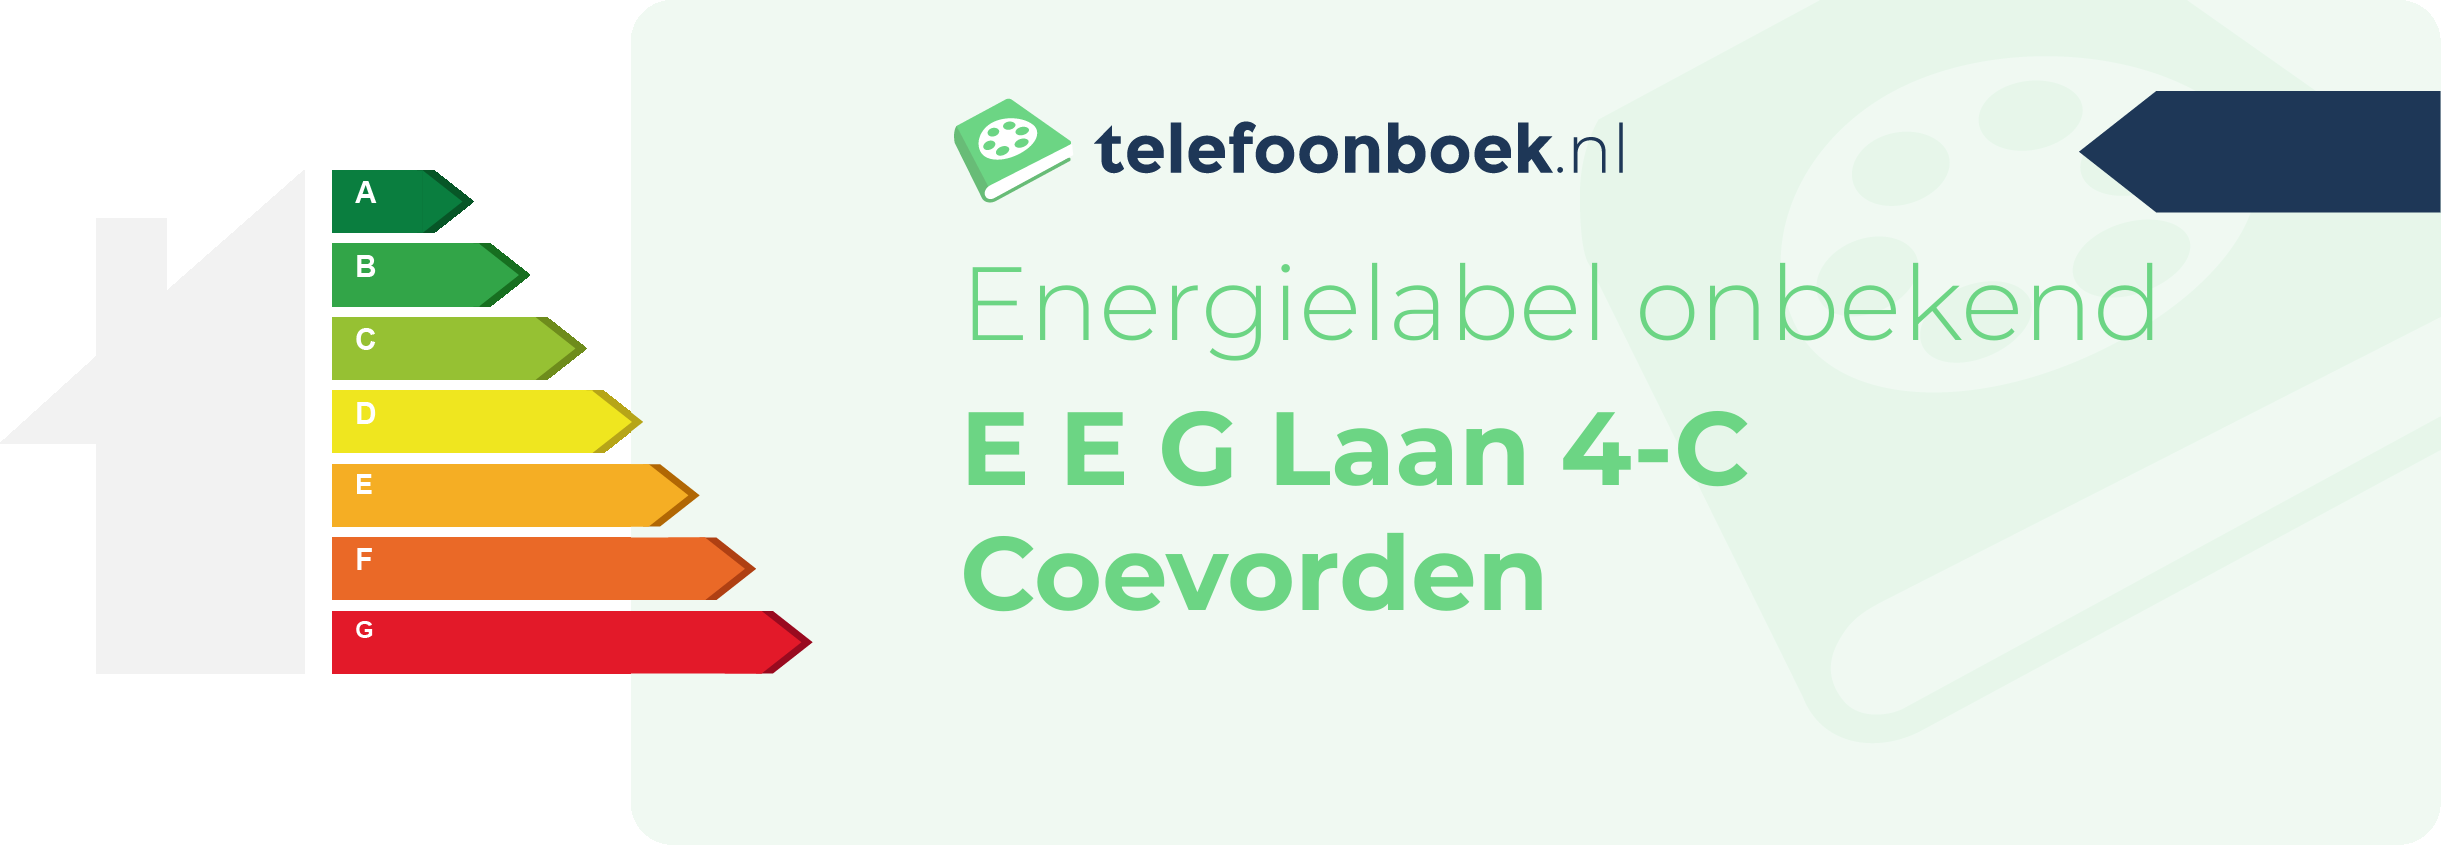 Energielabel E E G Laan 4-C Coevorden